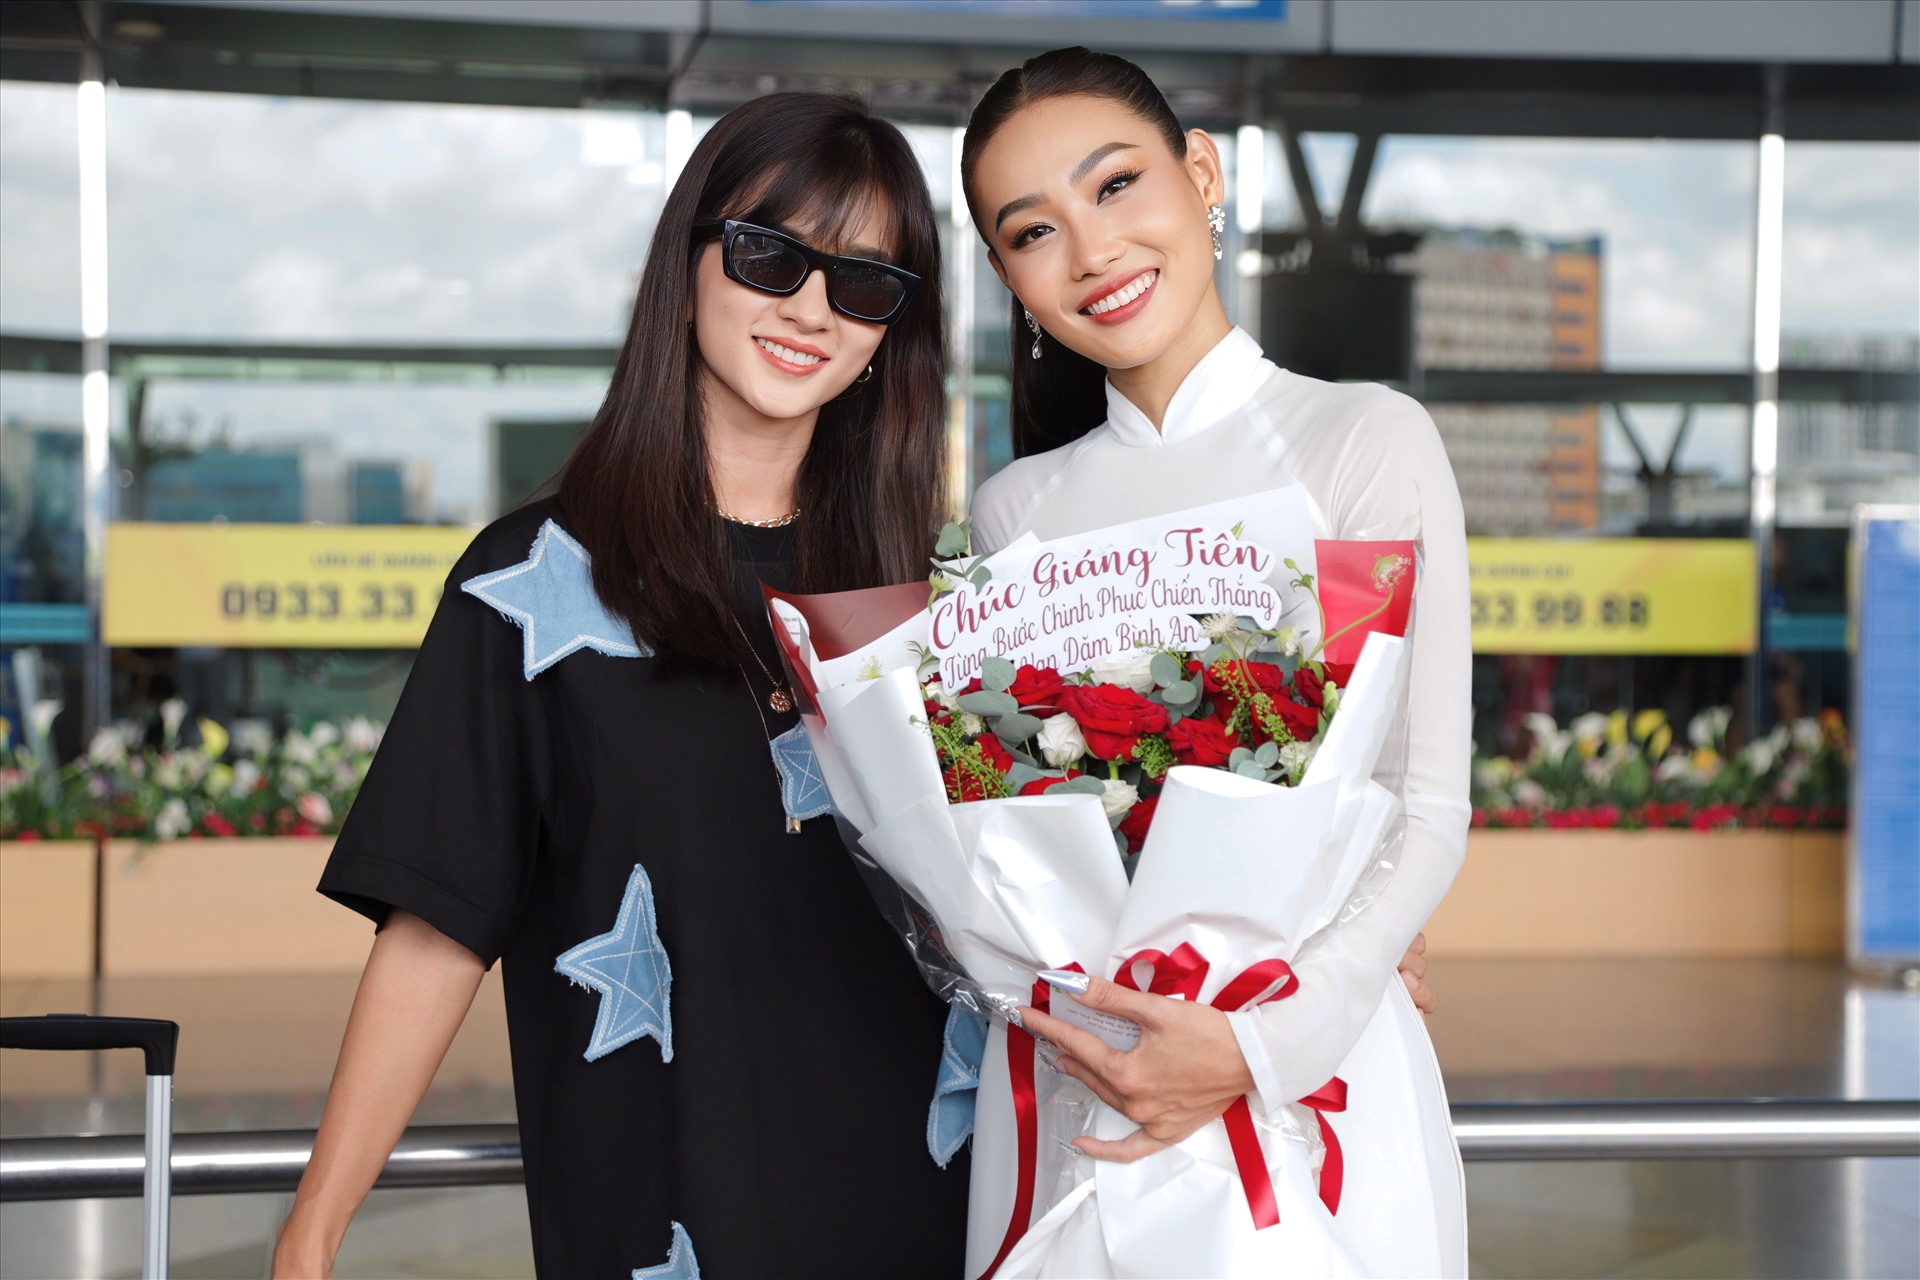 Nguyễn Giáng Tiên từng lọt vào top 5 Miss Fitness Vietnam 2022, cô được đánh giá là người đẹp năng động, giàu năng lượng và đặc biệt thích cười.  